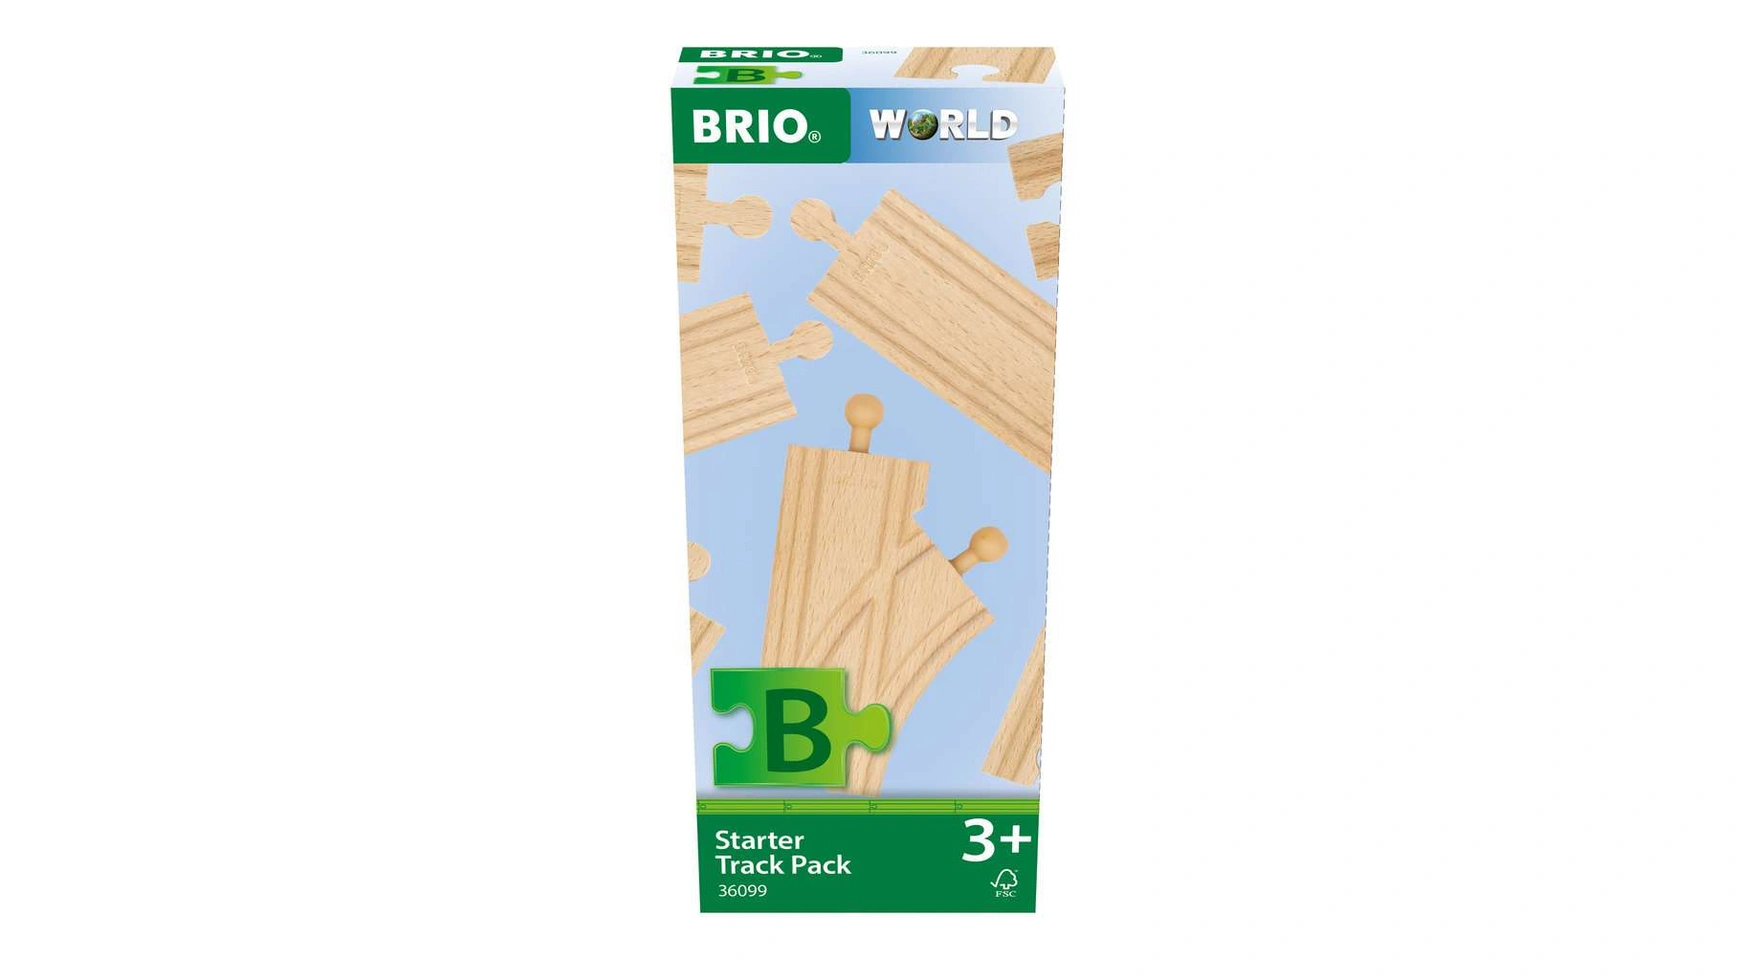 Brio Bahn Стартер рельсовый, ассортимент B | Набор деревянных дорожек из 12 предметов для детей от 3 лет и старше.